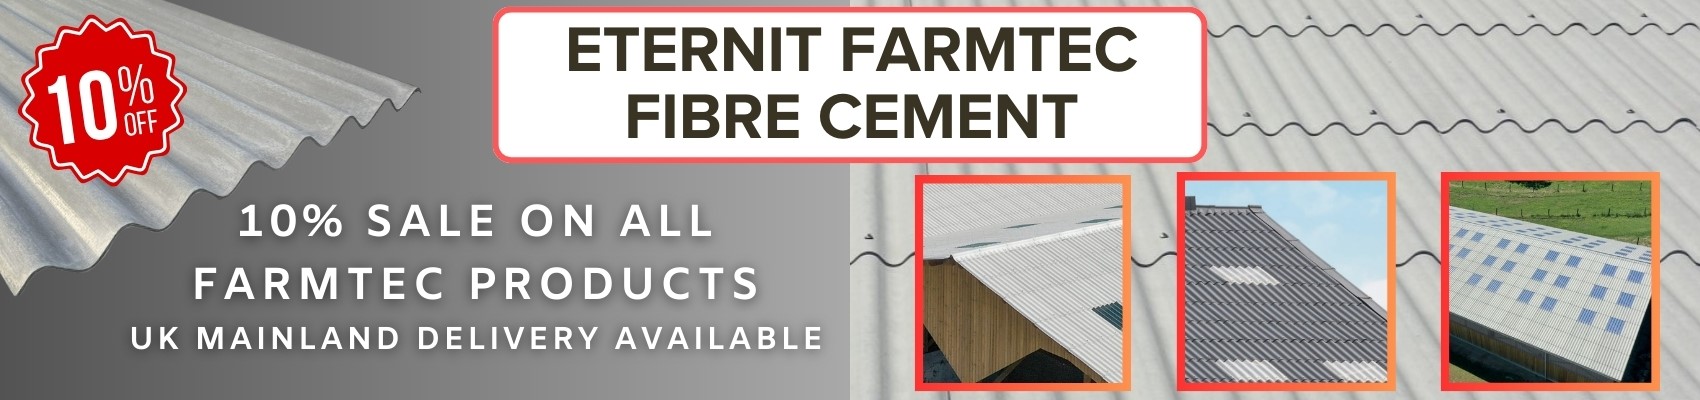 10% Eternit Farmtec sale across the range